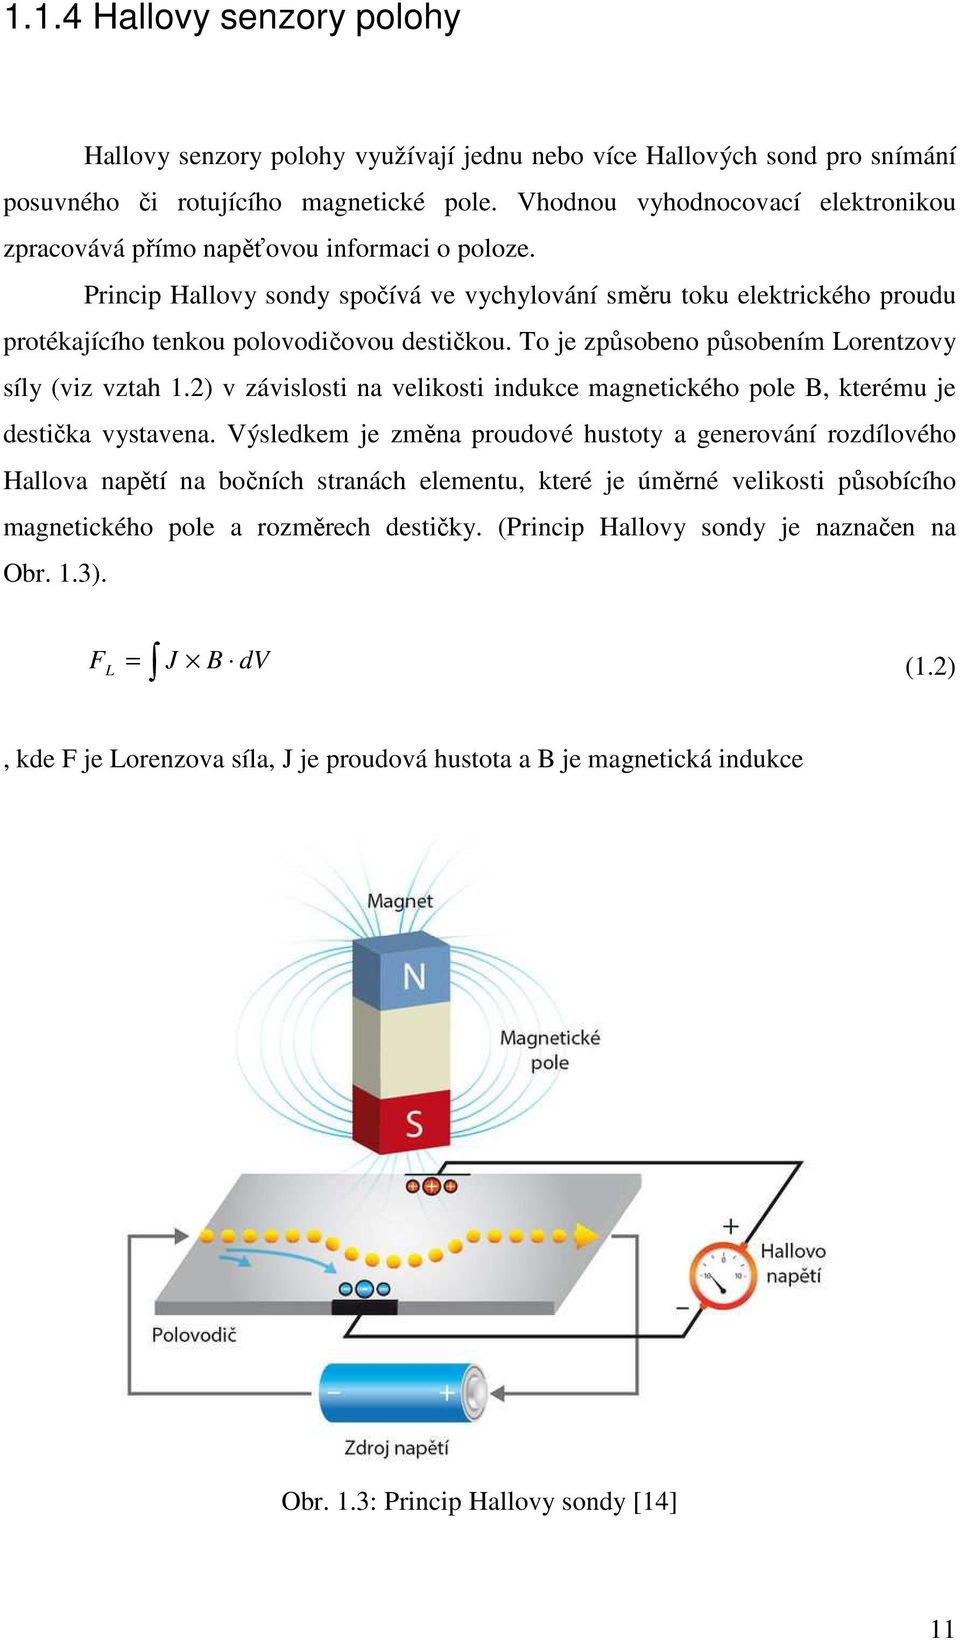 Princip Hallovy sondy spočívá ve vychylování směru toku elektrického proudu protékajícího tenkou polovodičovou destičkou. To je způsobeno působením Lorentzovy síly (viz vztah 1.